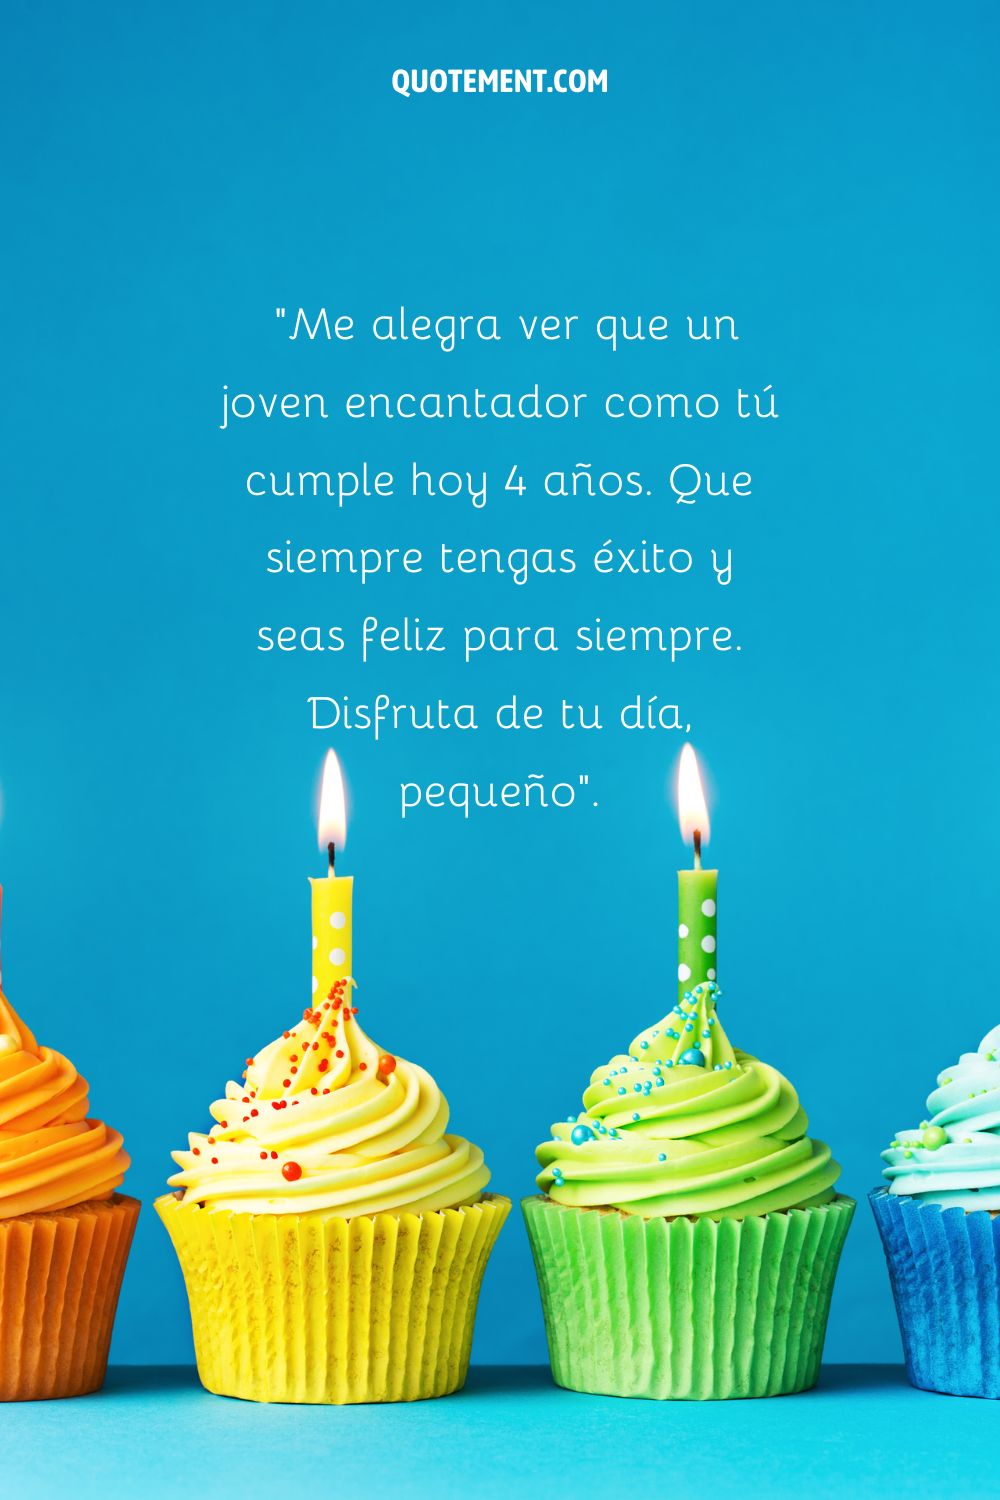 cupcake amarillo y verde con sprinkles arco iris representando imagen de feliz 4º cumpleaños